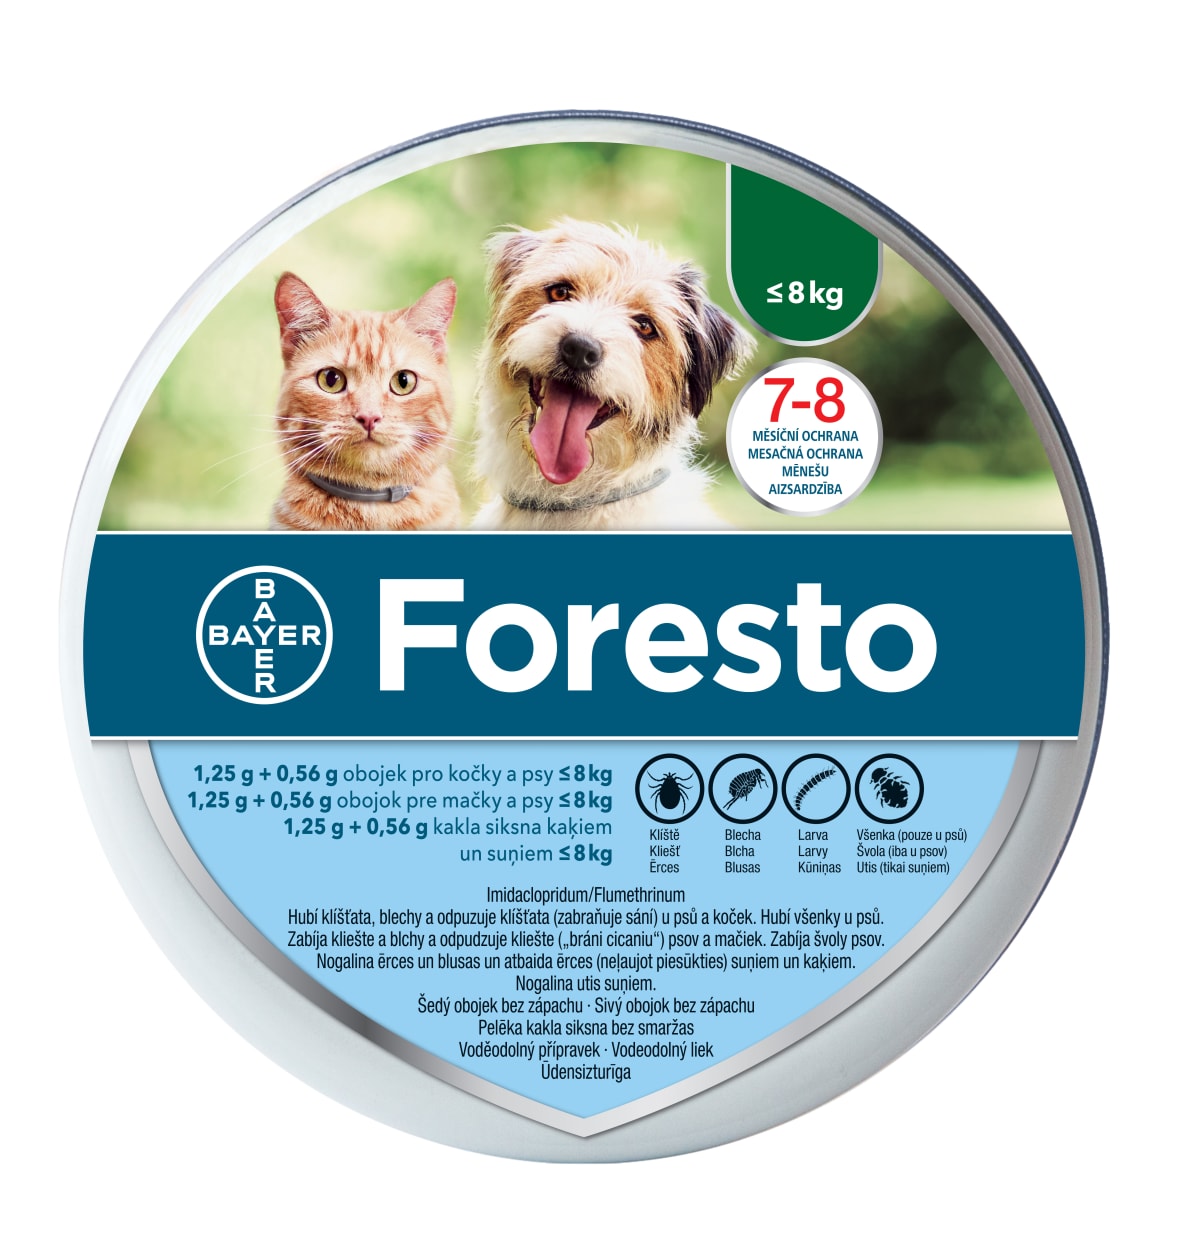 Antiparazitní obojek Foresto je veterinární léčivý přípravek. Čtěte pečlivě příbalové informace.